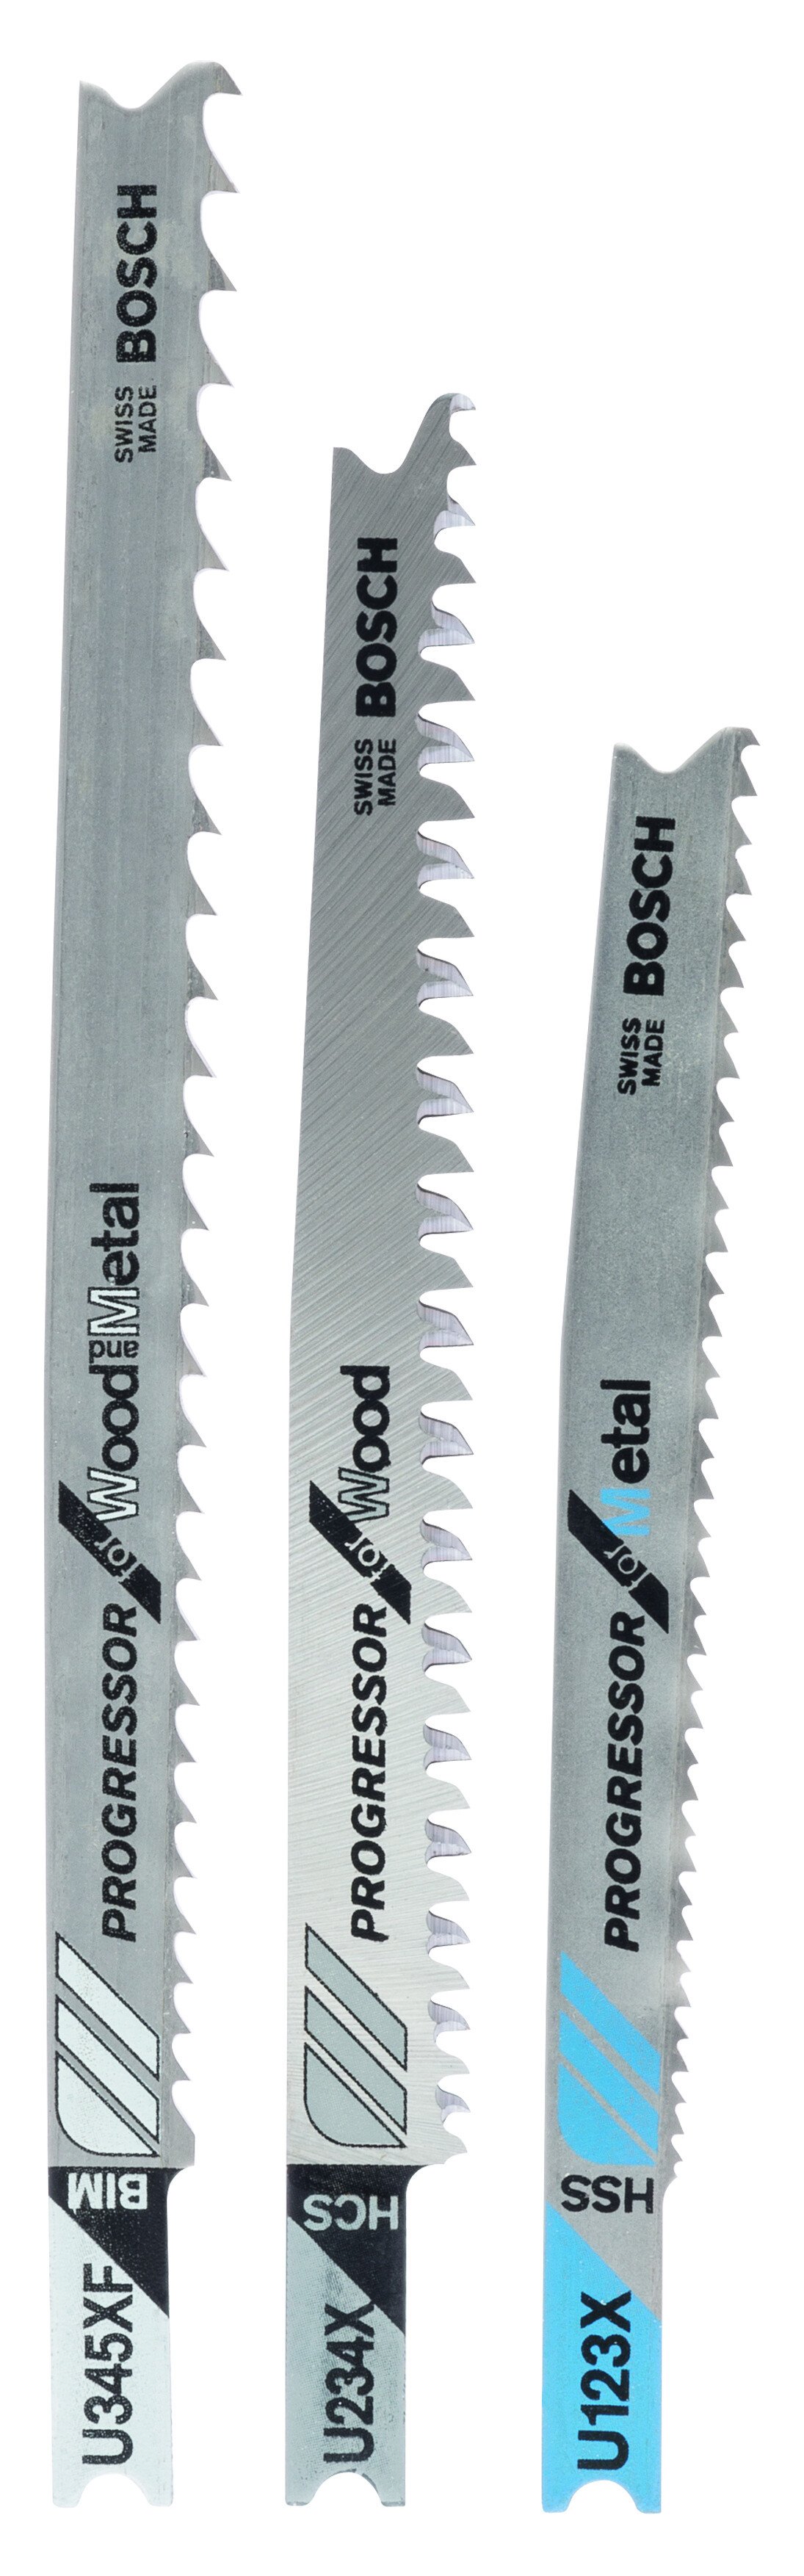 Bosch 2607010516 Jigsaw blades 3 blade assortment universal shank 2607010516